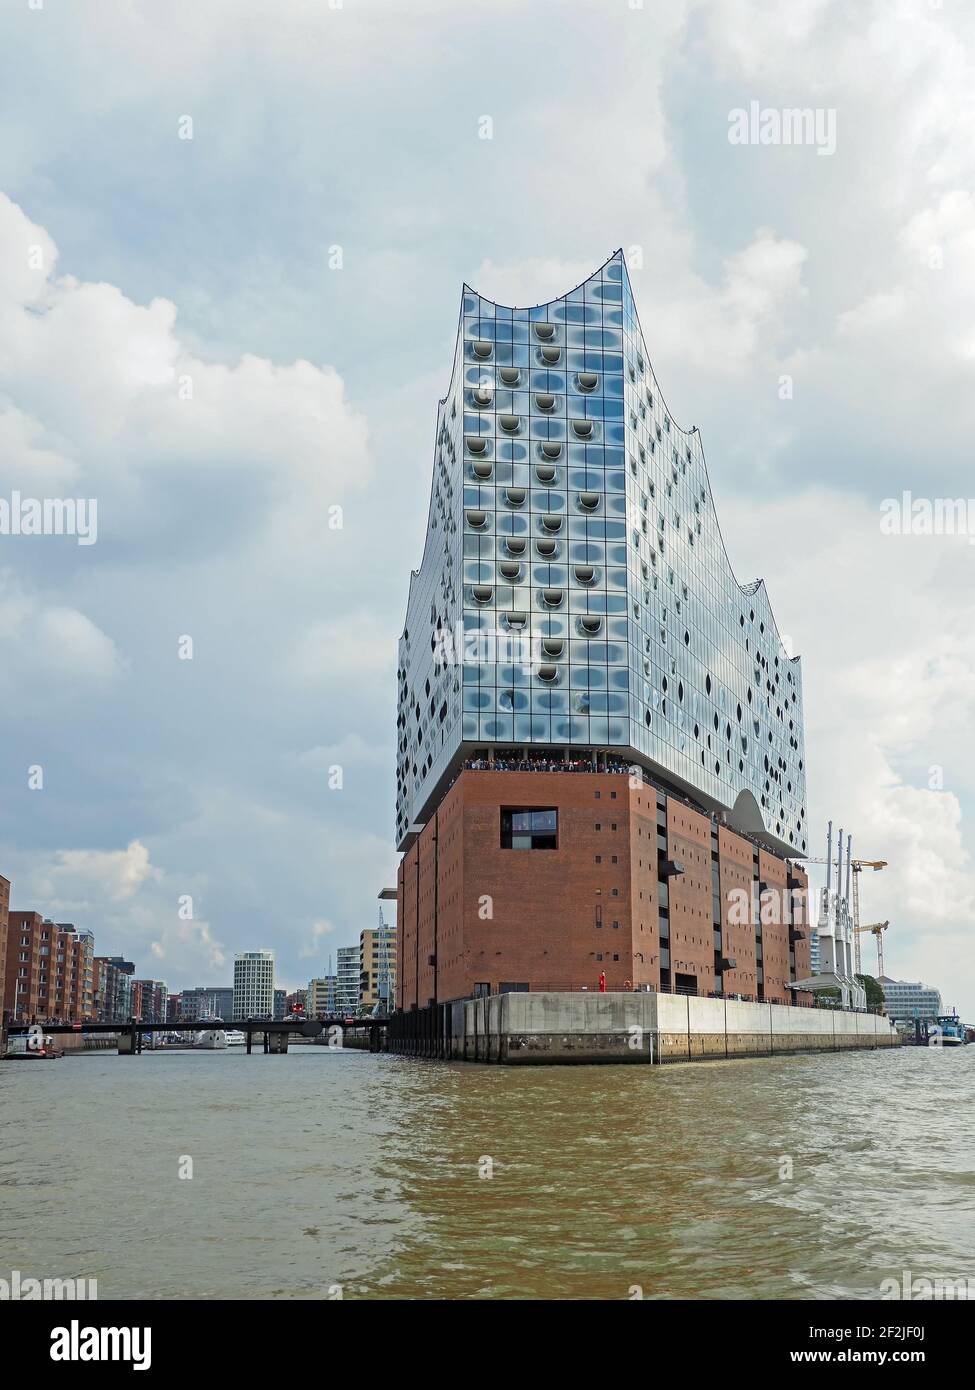 Amburgo, Germania - 09/08/2019: Paesaggio urbano di Amburgo con sala concerti Elbe Philharmonic Hall Foto Stock